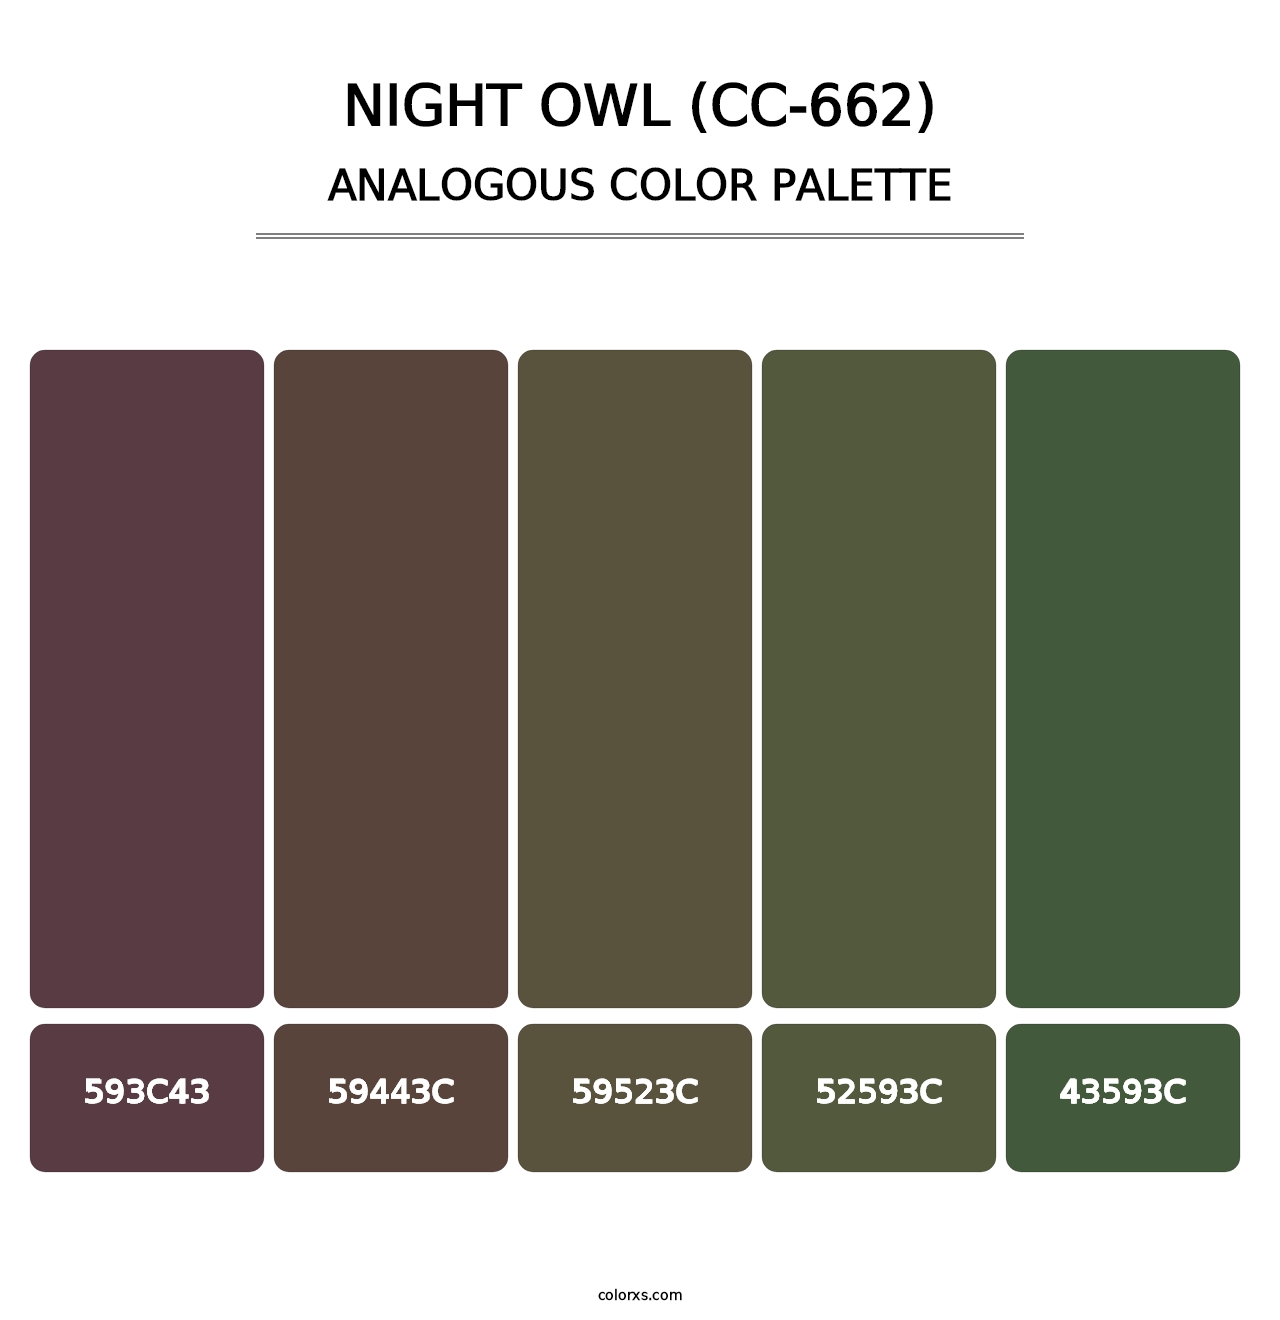 Night Owl (CC-662) - Analogous Color Palette